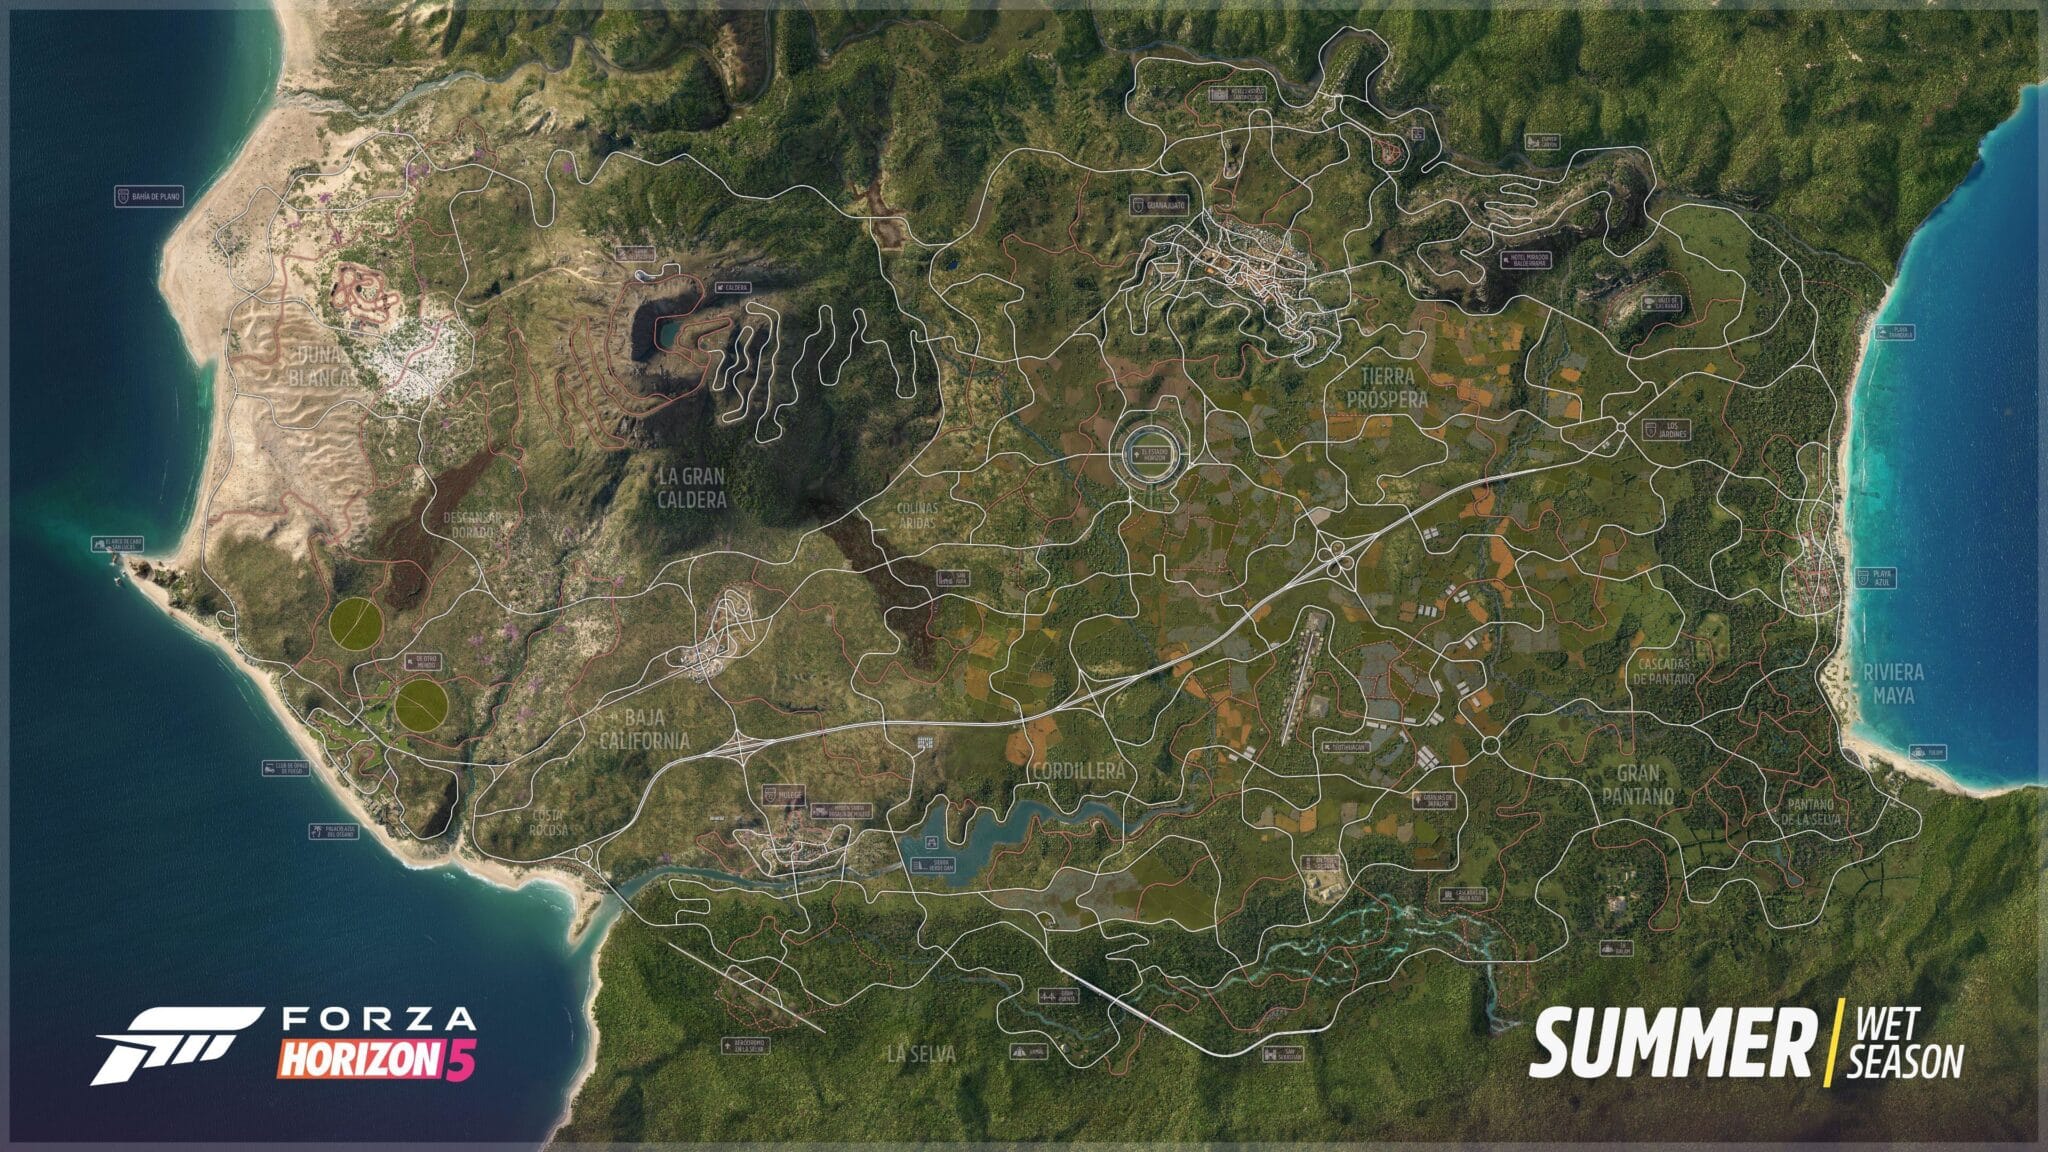 El mapa de verano completo de Forza Horizon 5.